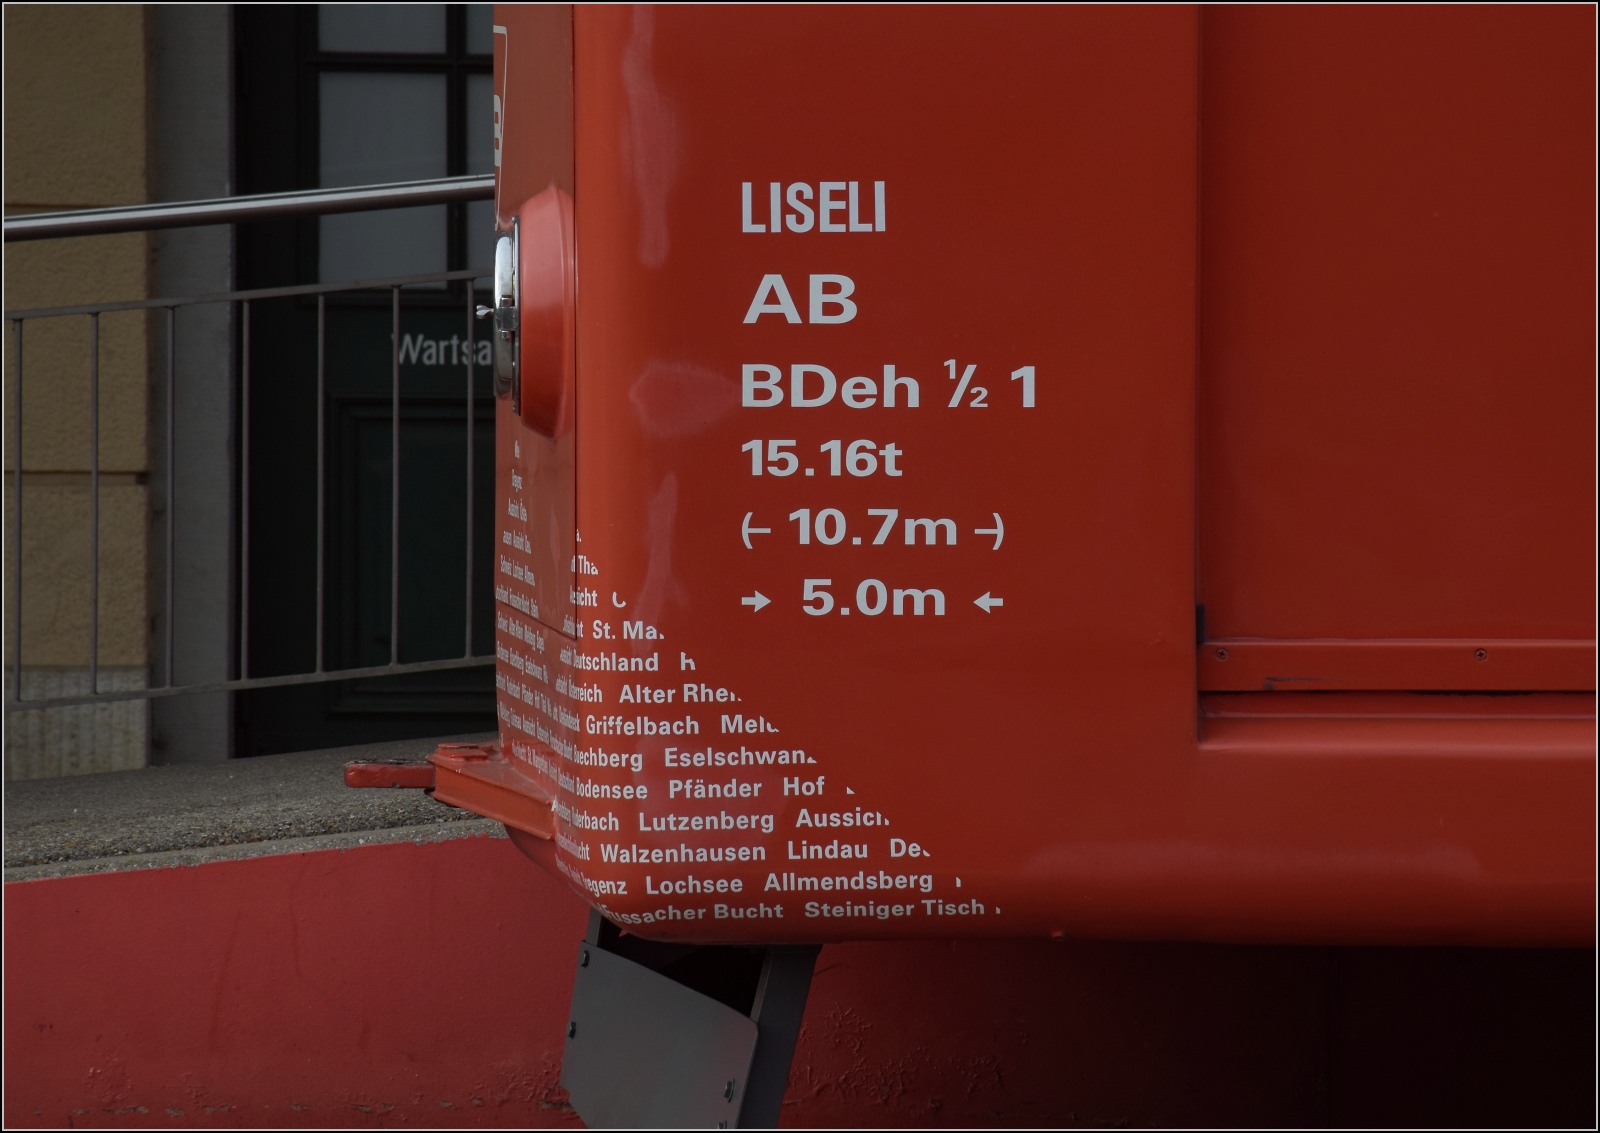 Hommage an die S26.

Detailaufnahme BDeh 1/2 1 'Liseli'. Rheineck, Februar 2023. 